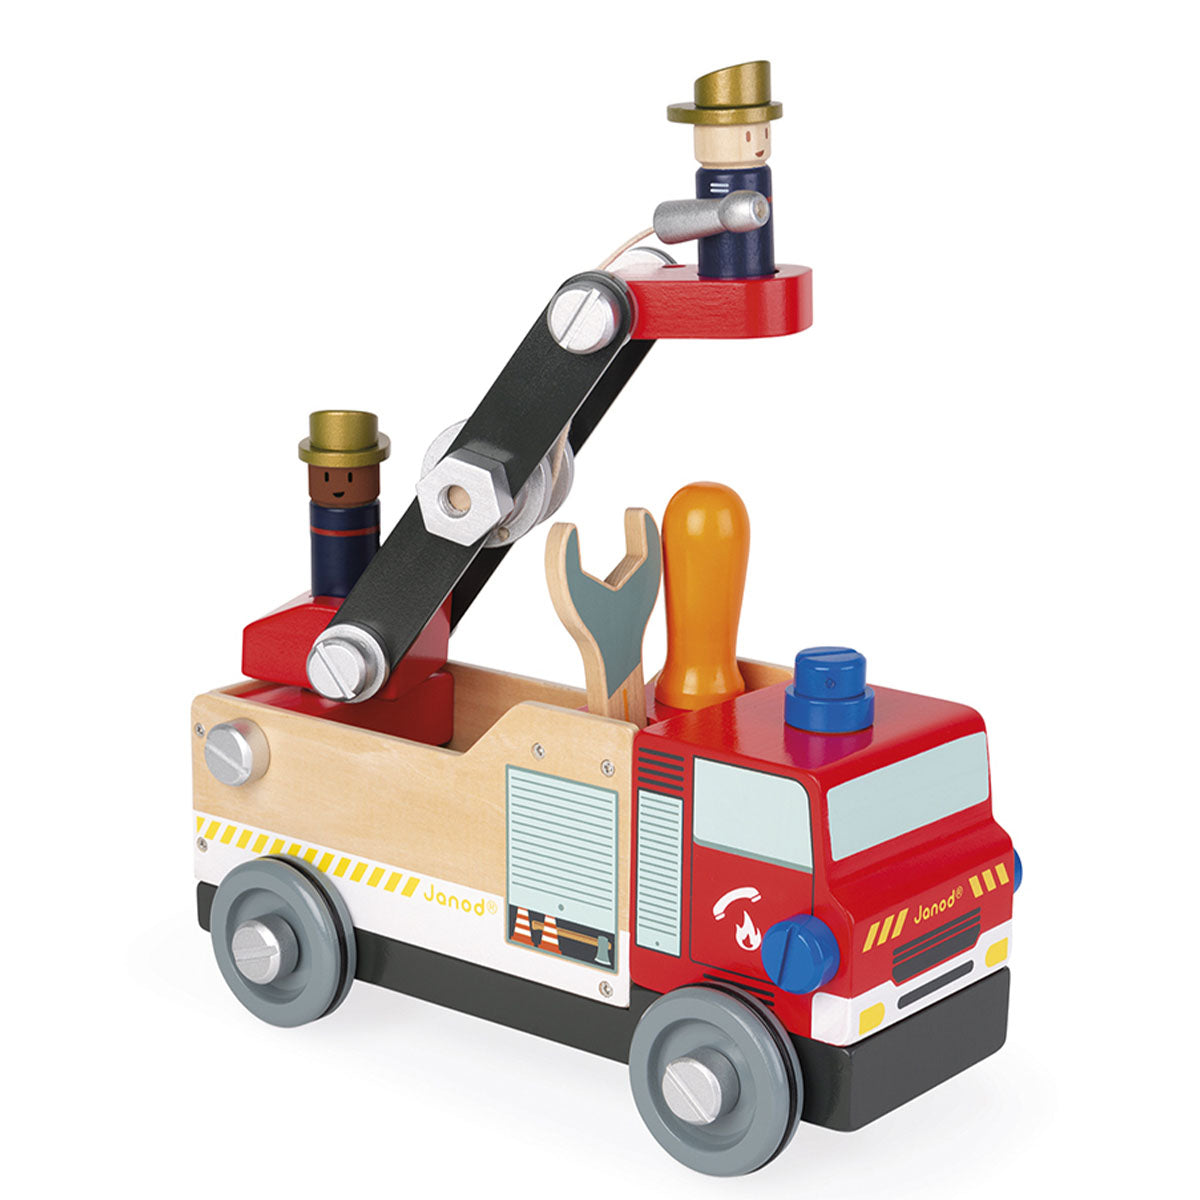 Is jouw kleintje gek op brandweerauto's? dan zal je kindje gegarandeerd urenlang plezier hebben met deze brico'kids brandweerauto van het merk Janod. Deze mooie brandweerauto is eigenlijk 2-1 speelgoed. De brandweerauto moet namelijk eerst gebouwd worden! VanZus